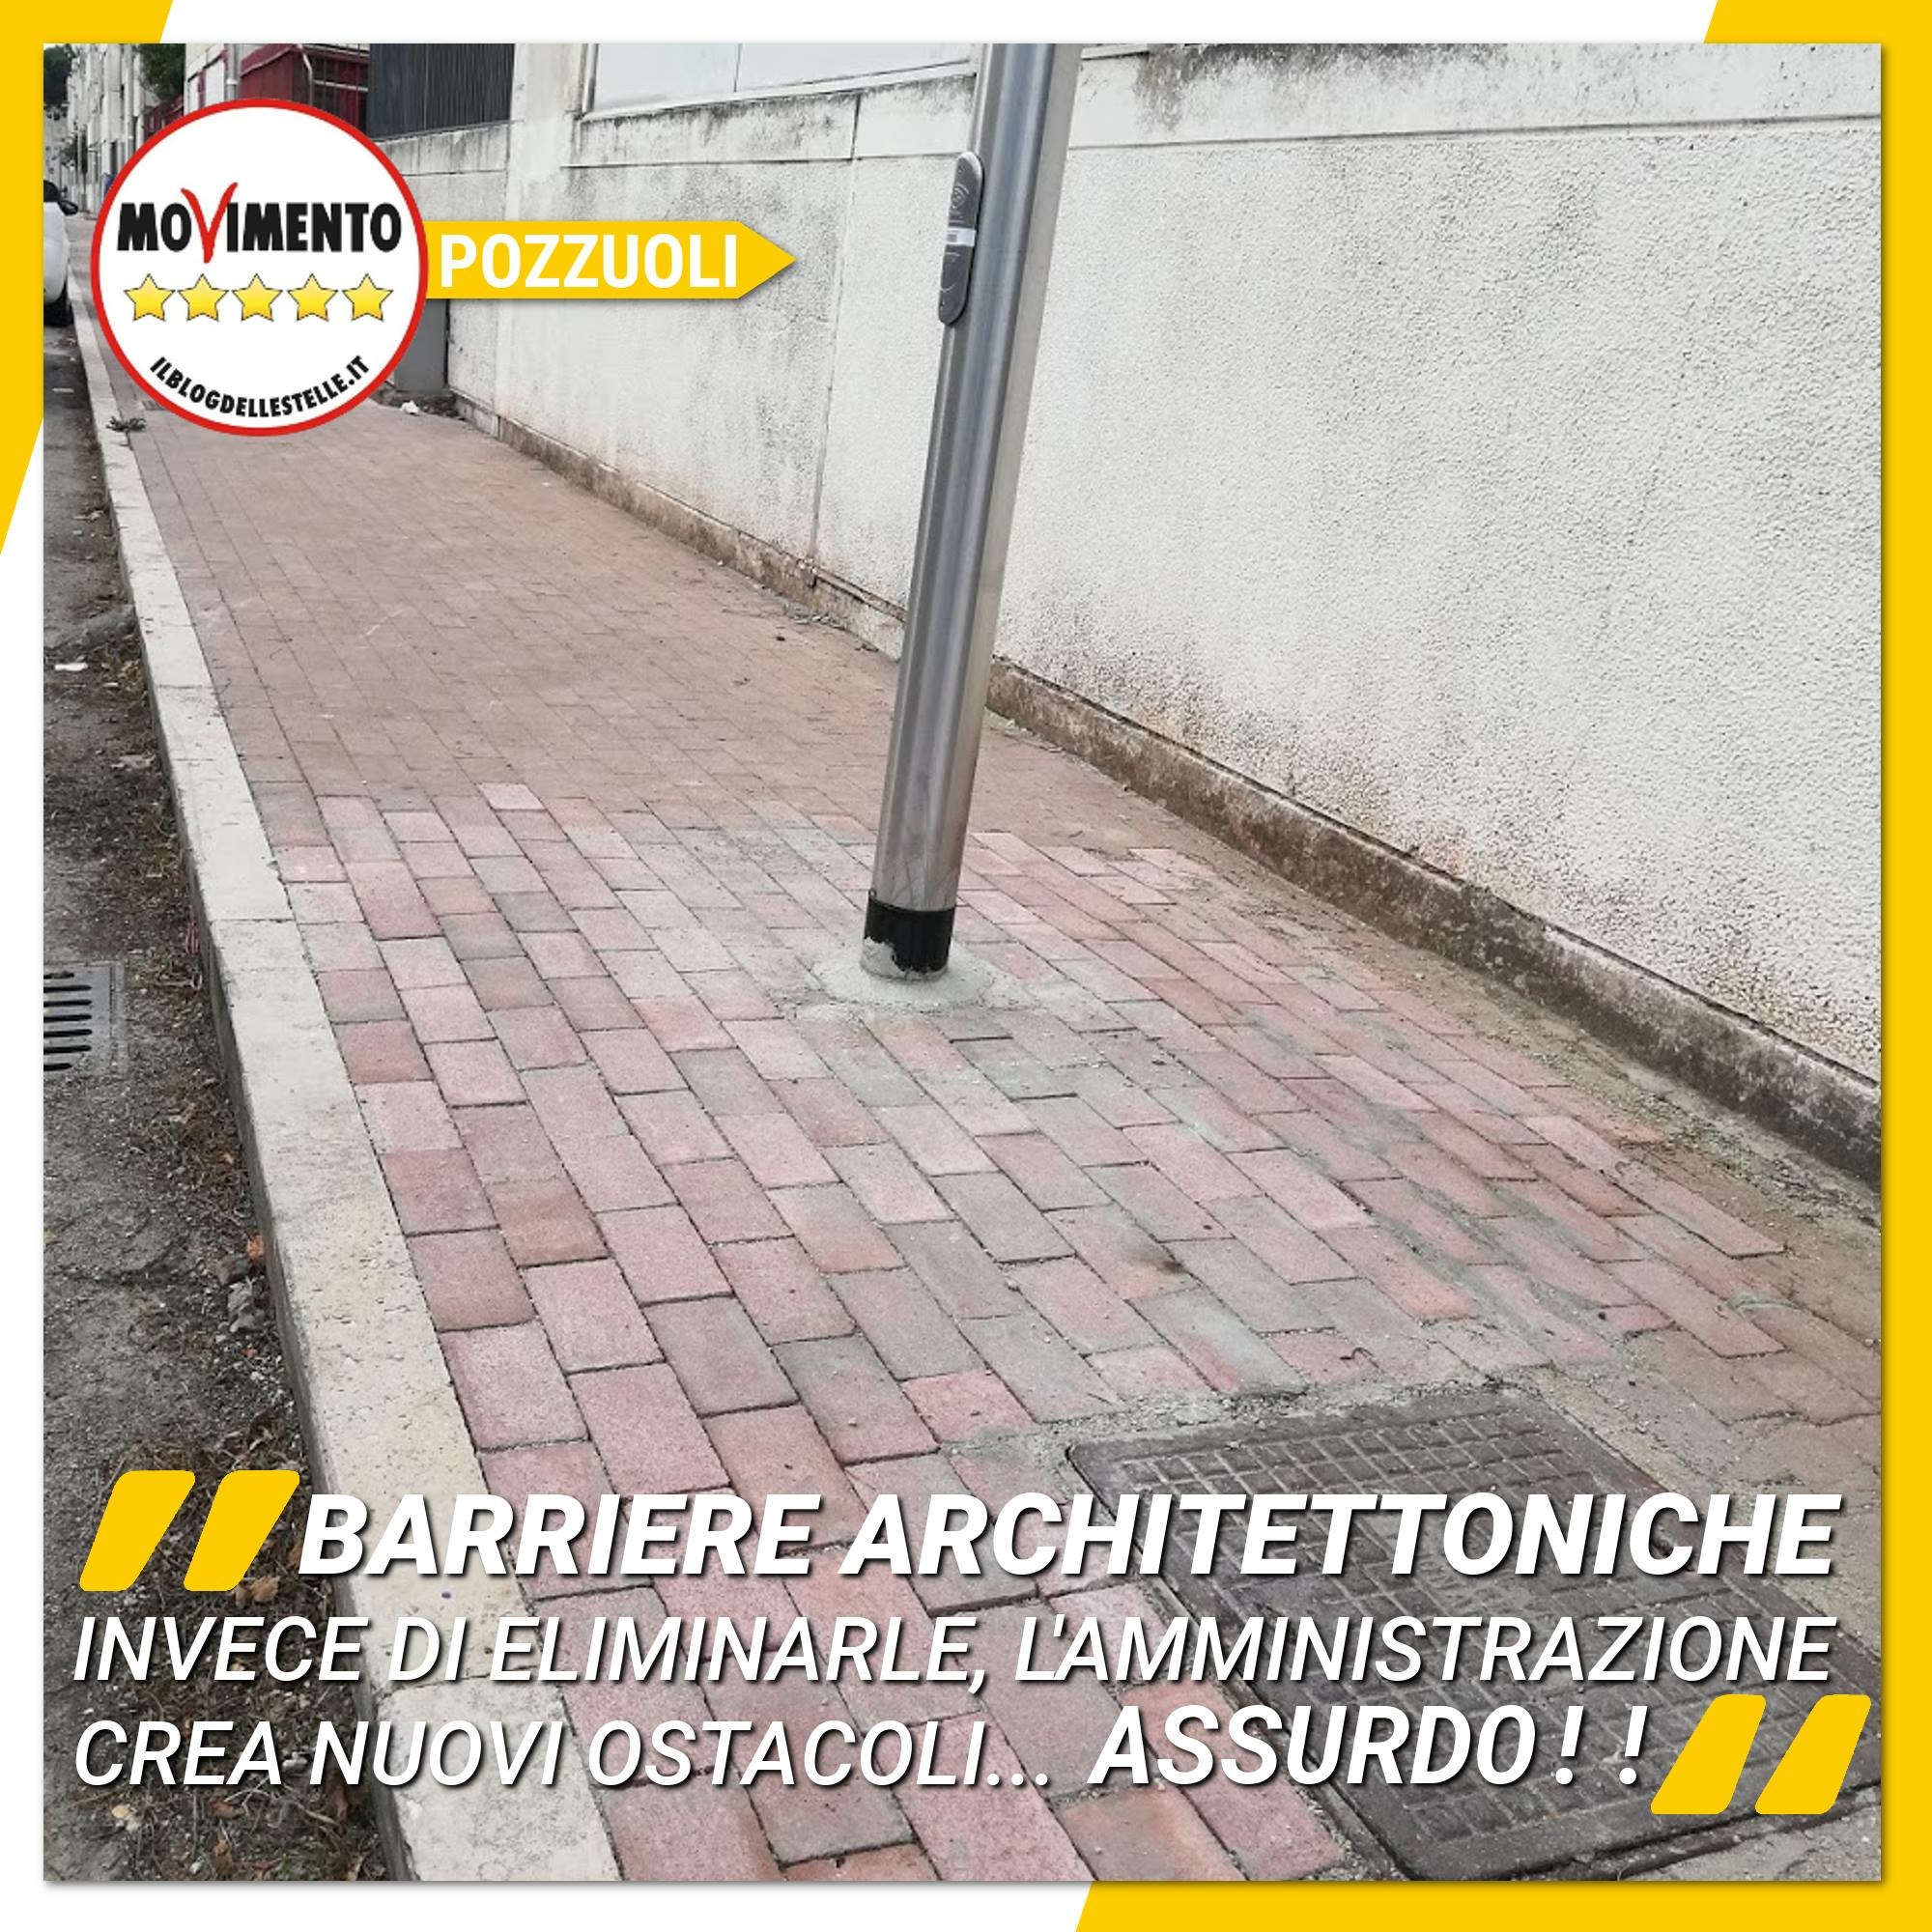 Movimento 5 Stelle: “Il comune di Pozzuoli, invece, di eliminare barriere architettoniche le crea: chi ha sbagliato paghi”